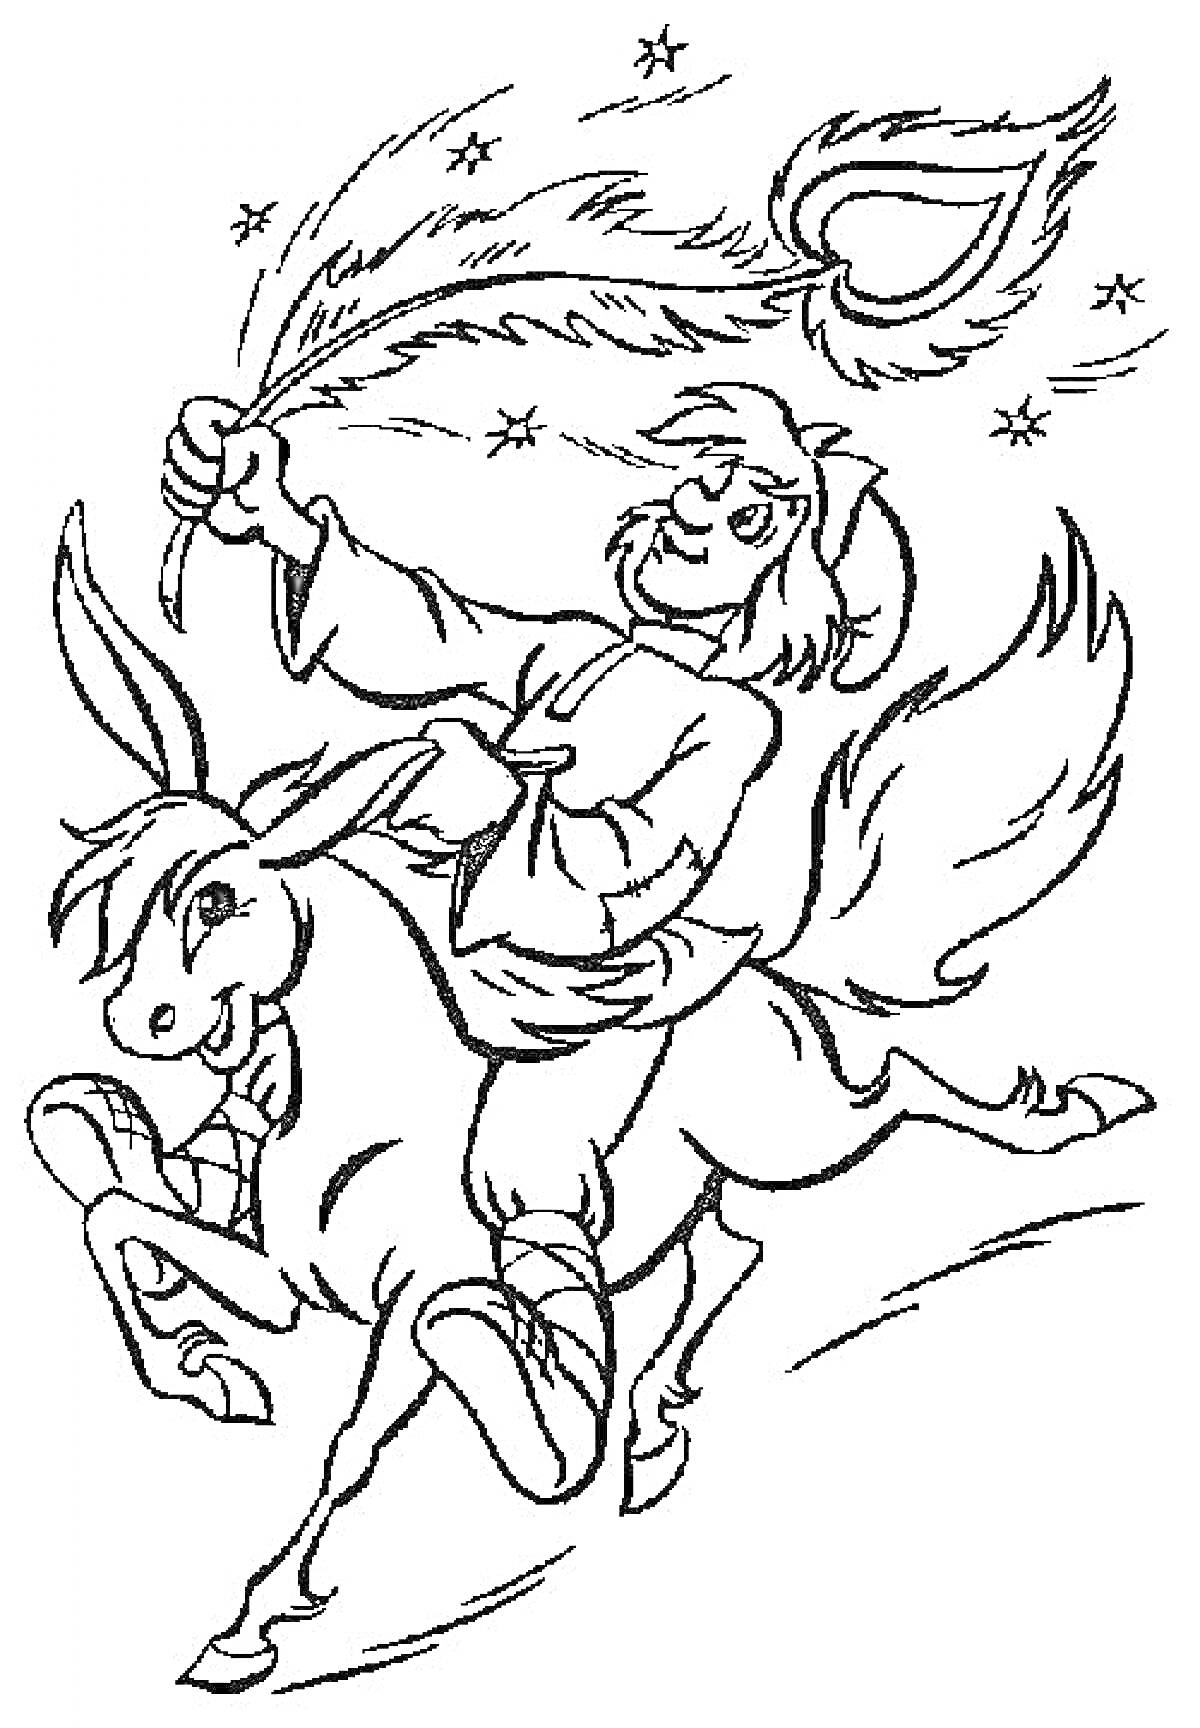 Раскраска Человек верхом на коне с пером Жар-Птицы в руке